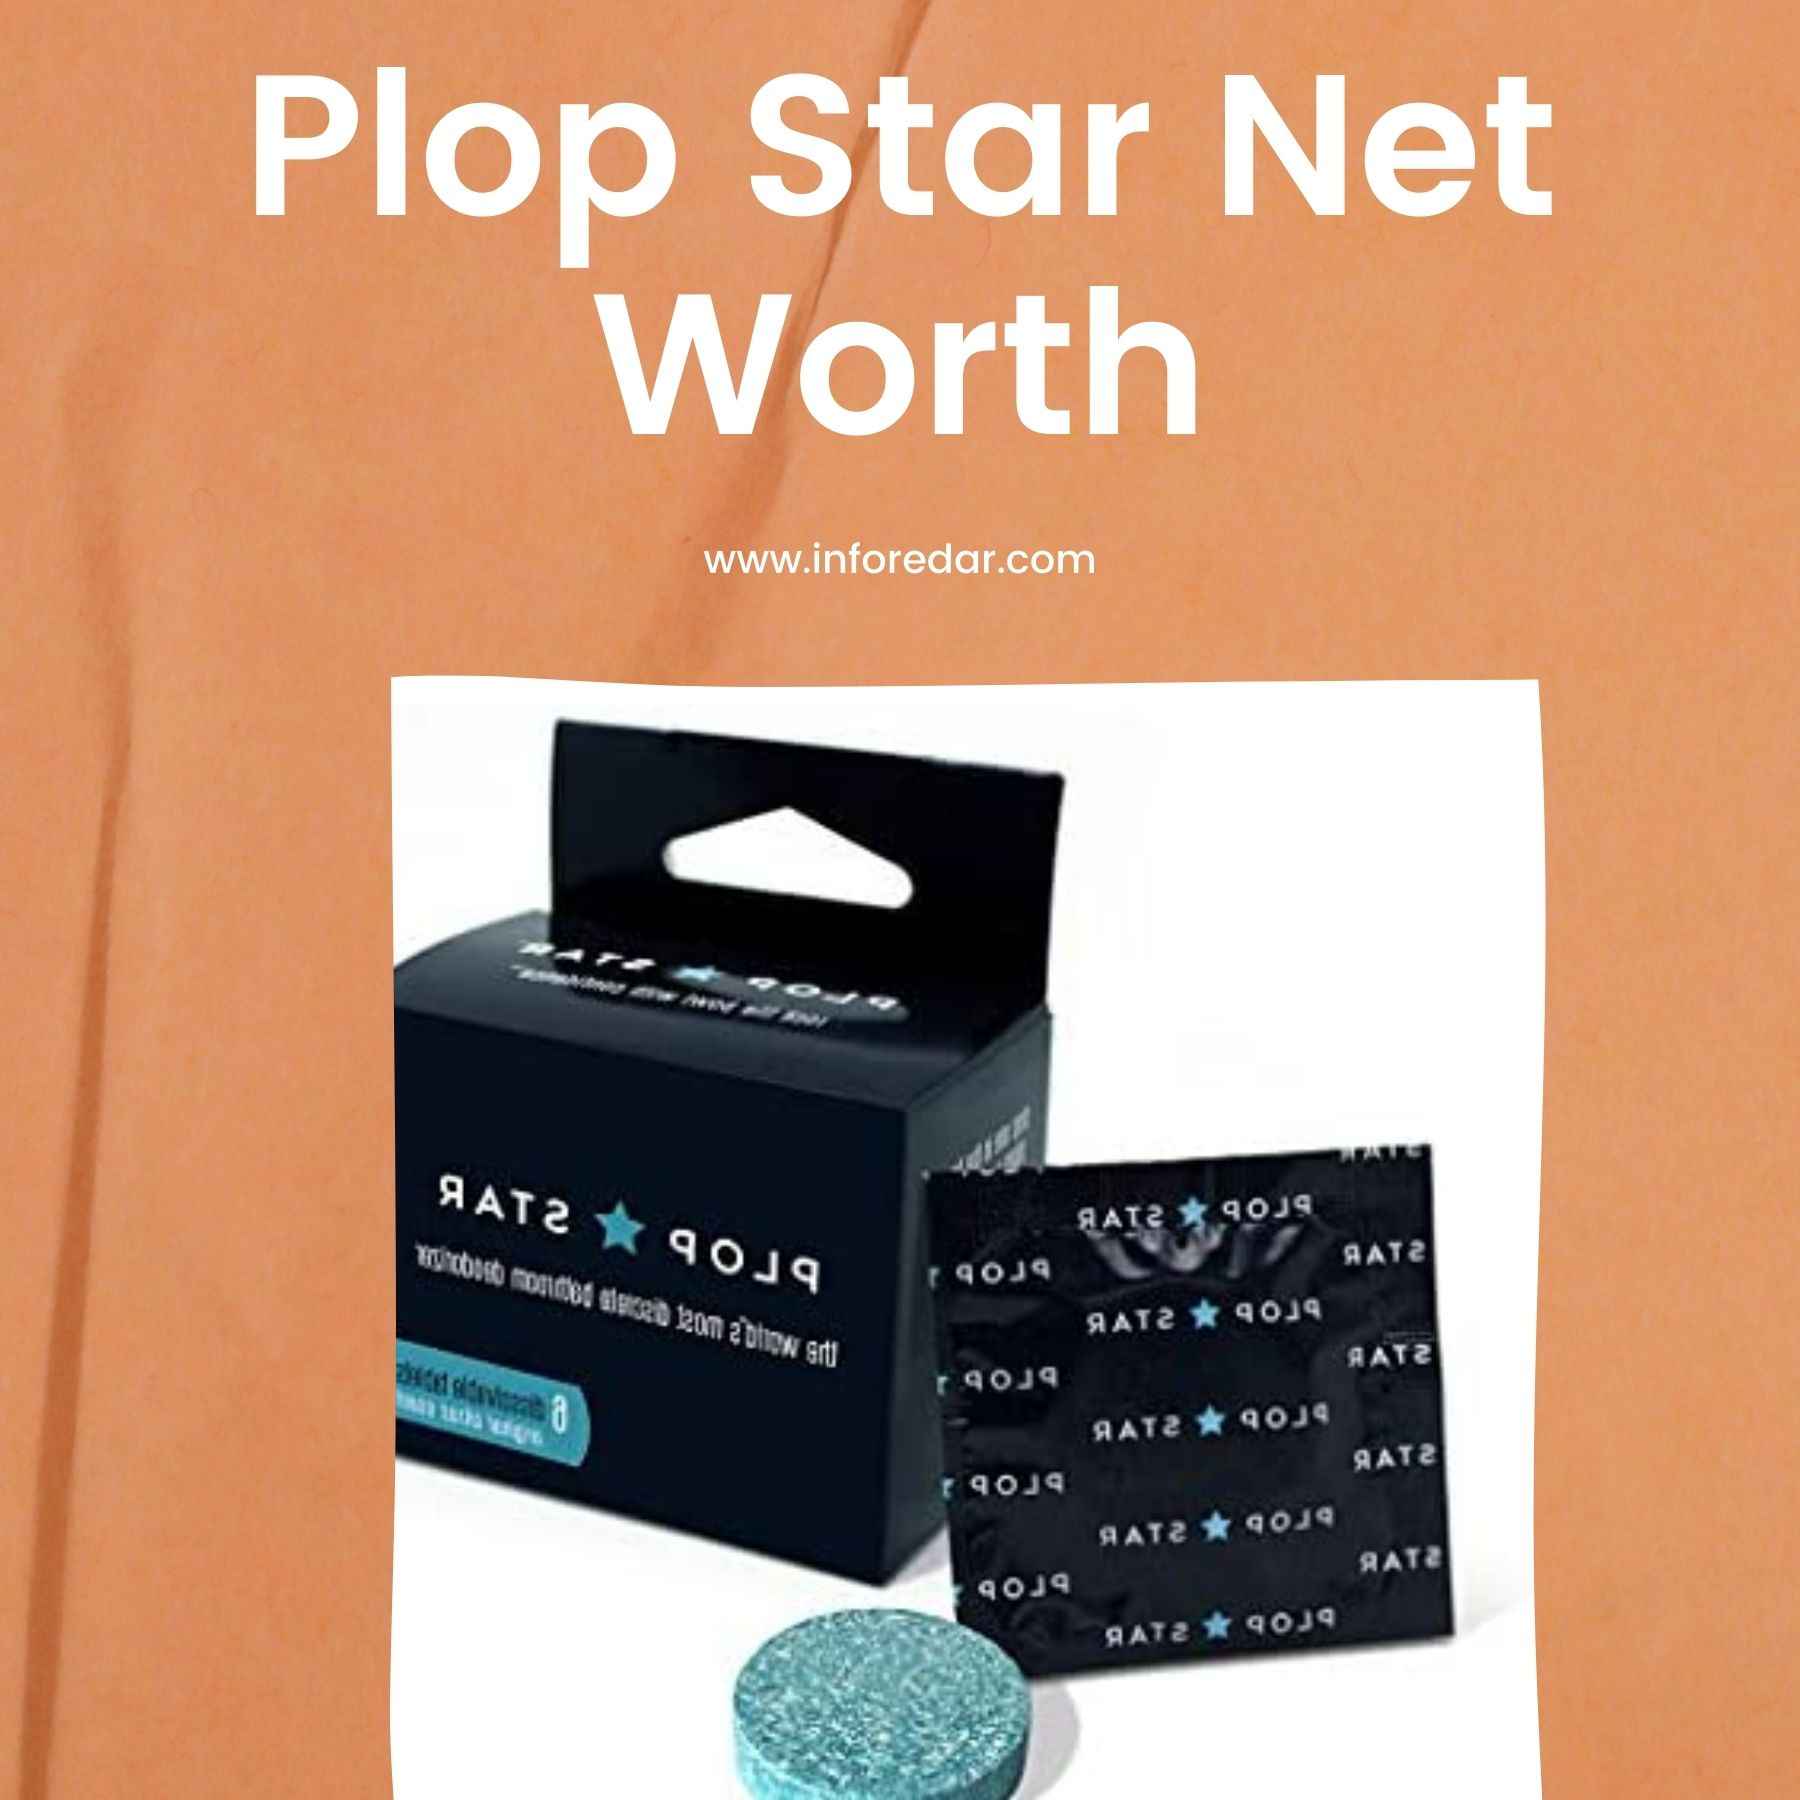 Plop Star Net Worth